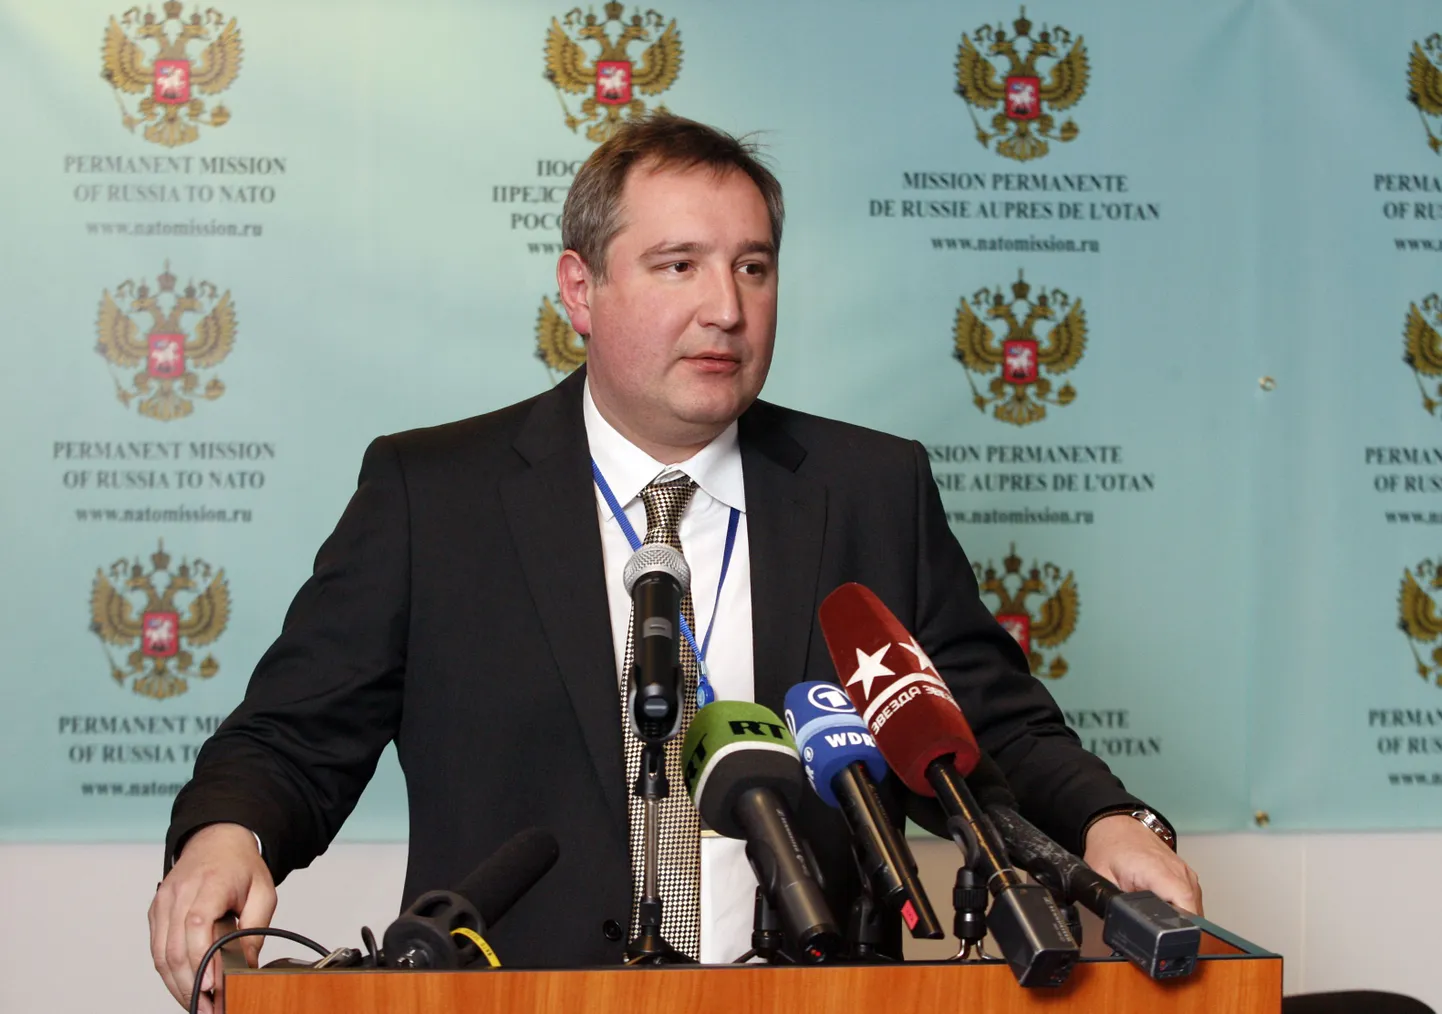 Рогозин отвечает на вопросы журналистов.